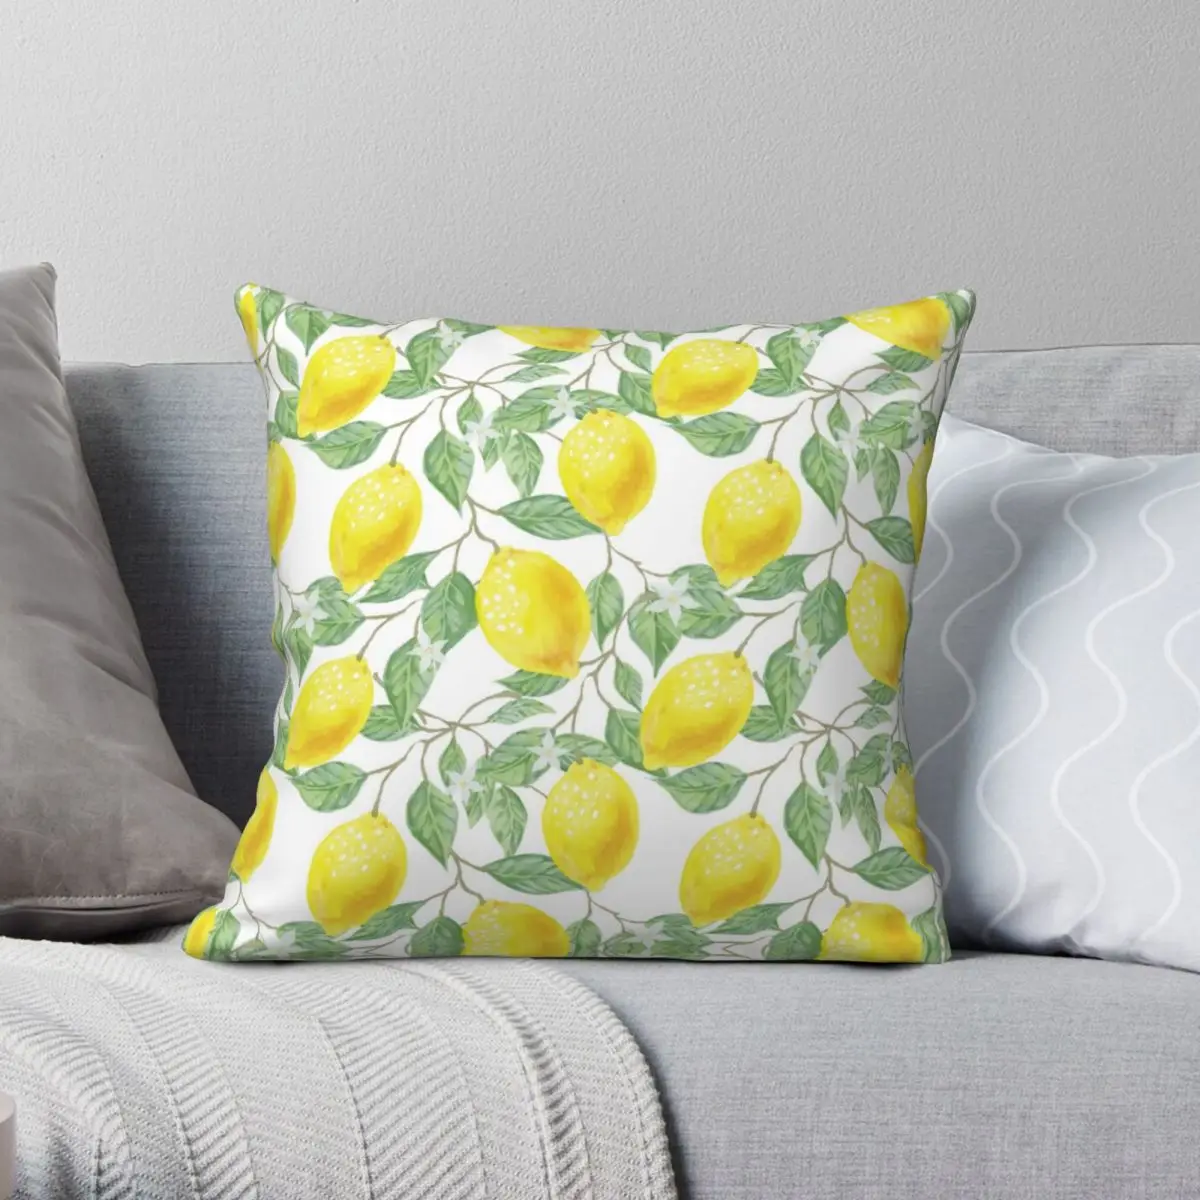 

Watercolor Lemon Square Pillowcase Polyester Linen Velvet Creative Zip Decor Throw Pillow Case Home Cushion Cover 18"